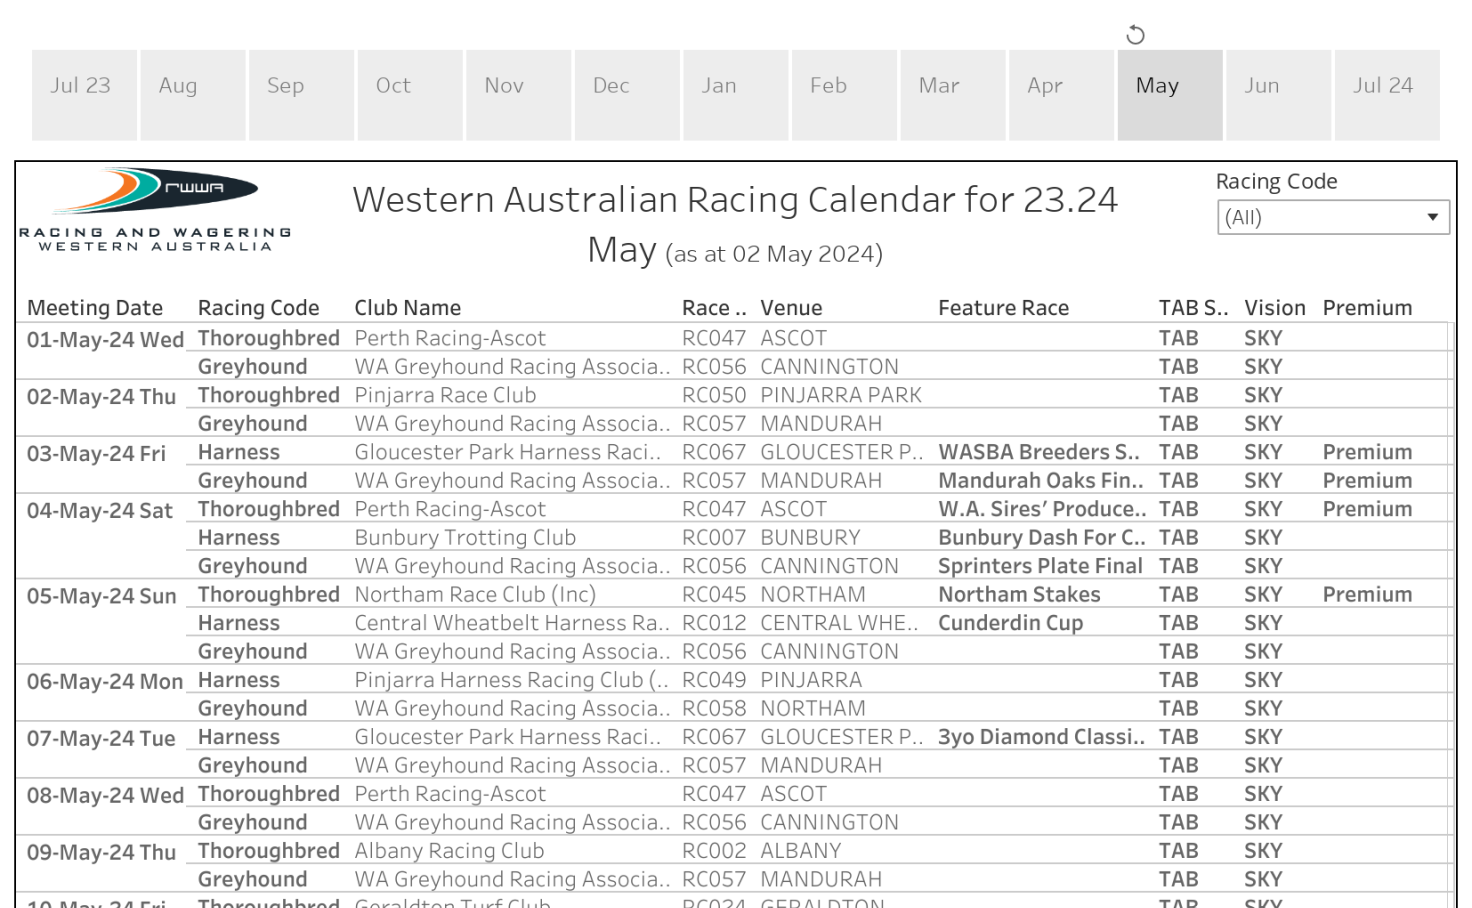 rwwa-racing-calendar-tableau-public